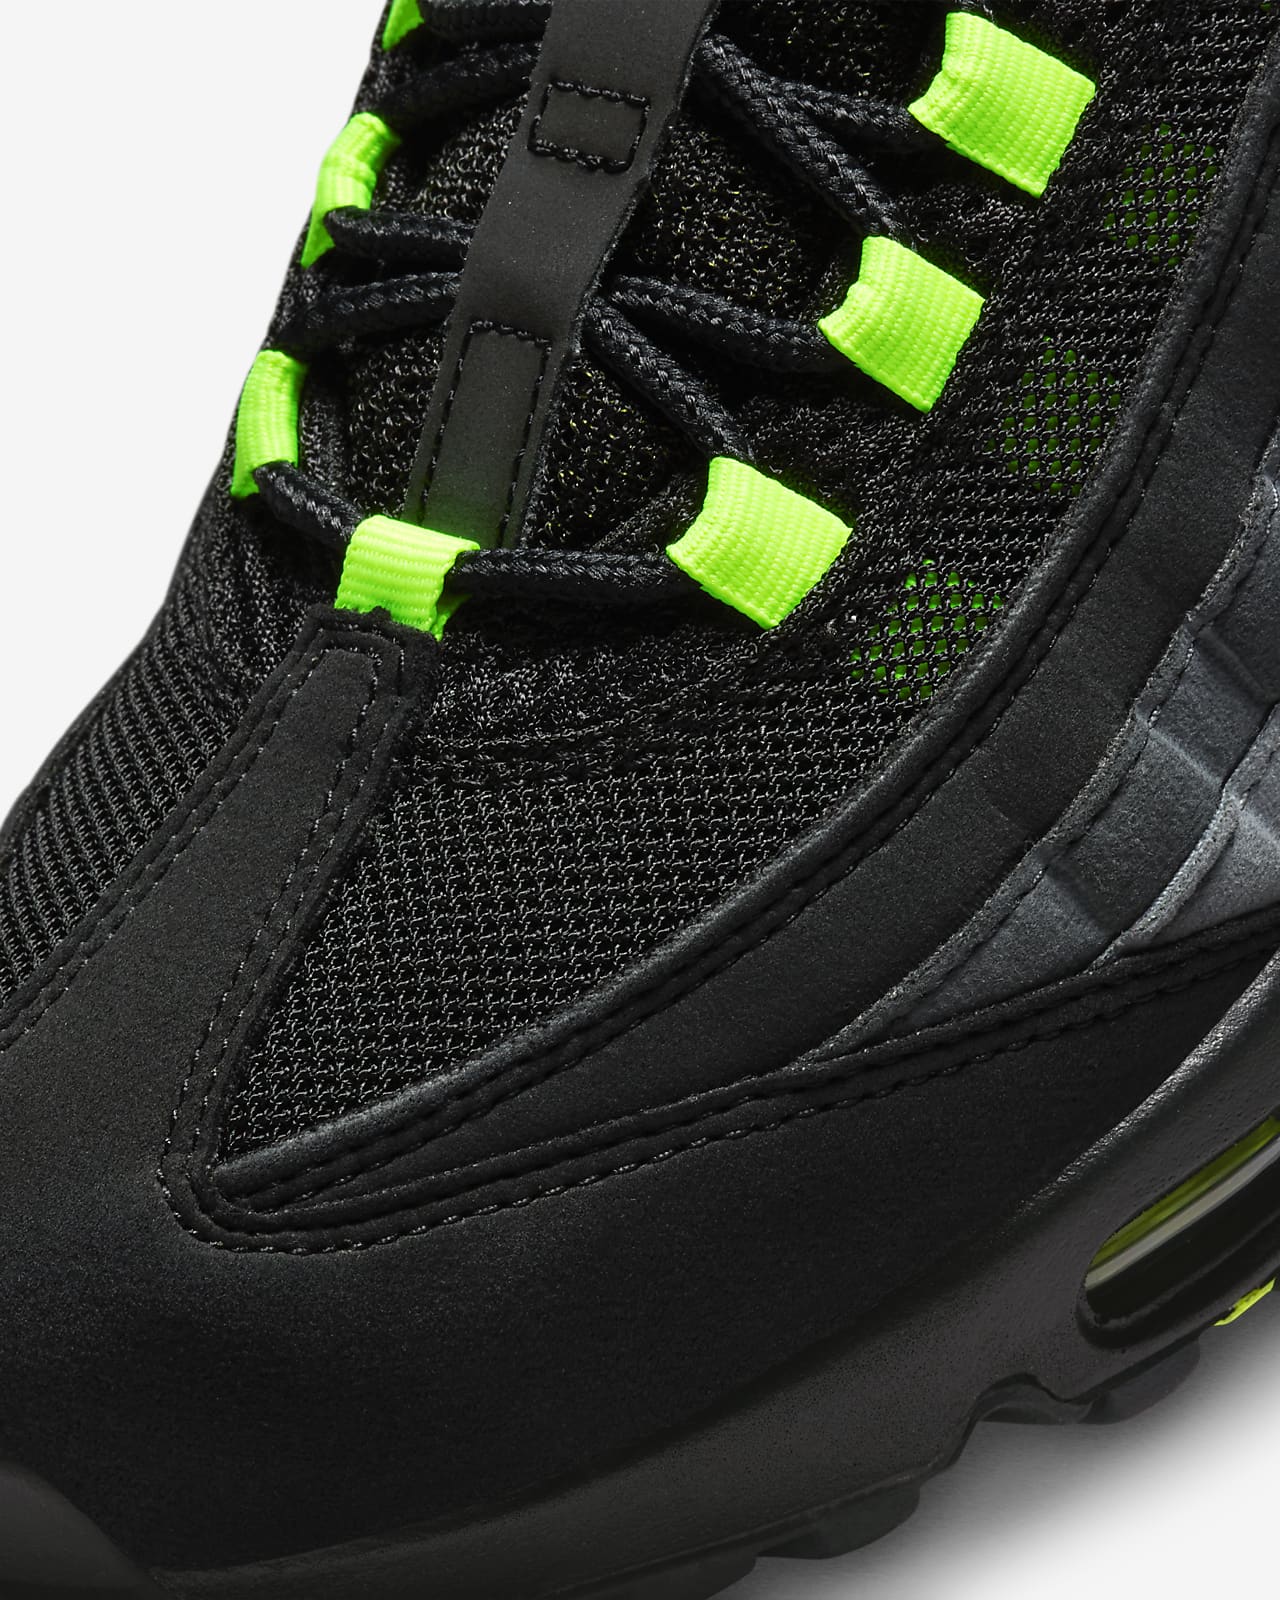 Nike Men's Air Max 95 Shoes